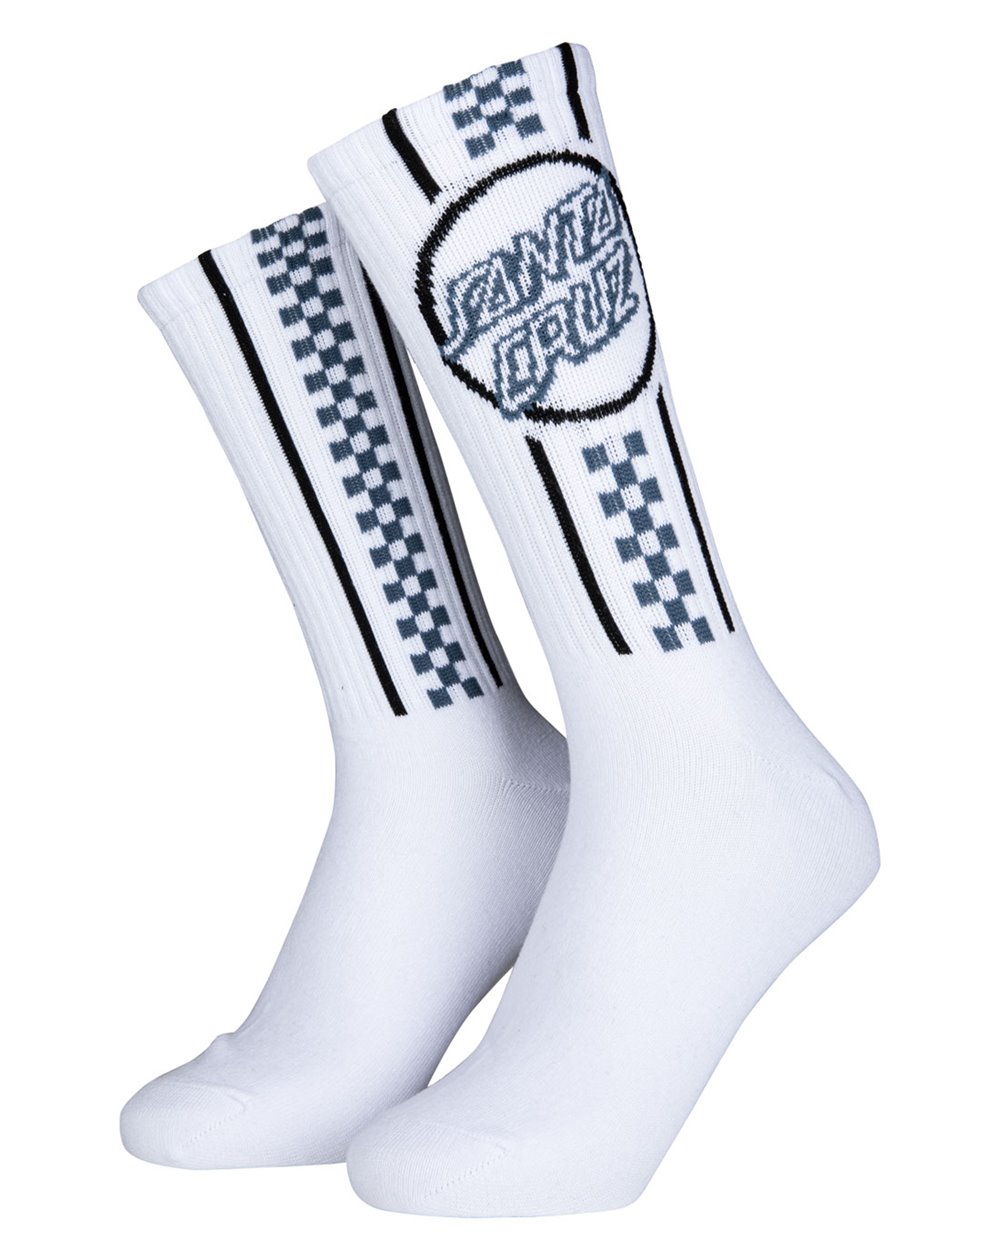 Santa Cruz Skate Socks Breaker Opus Dot (White)